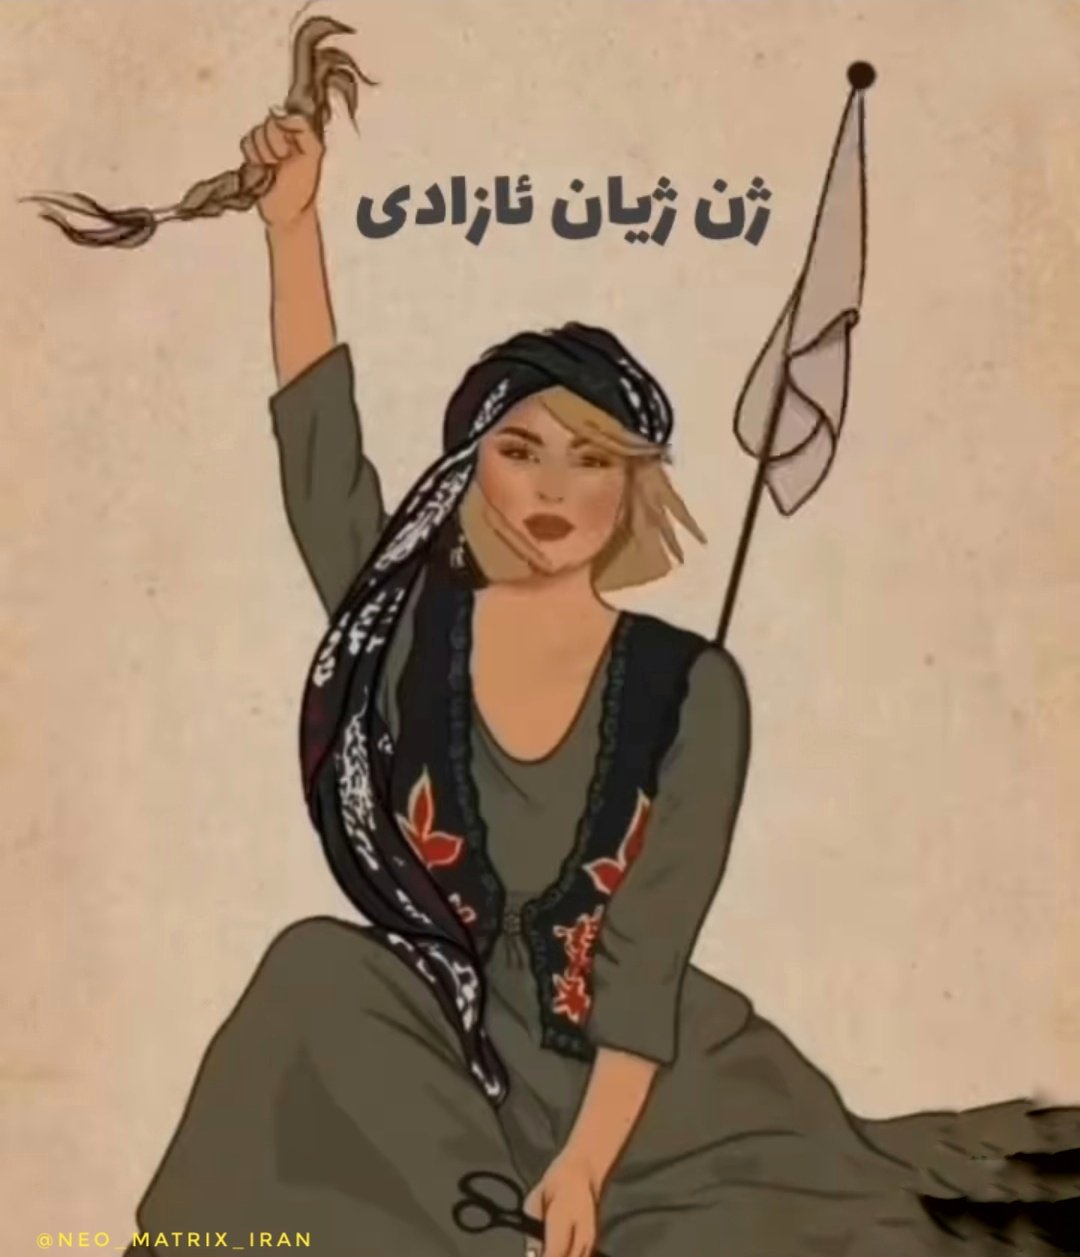 Iran Revolution Art No. Fe-2dSaWIA4vfKc